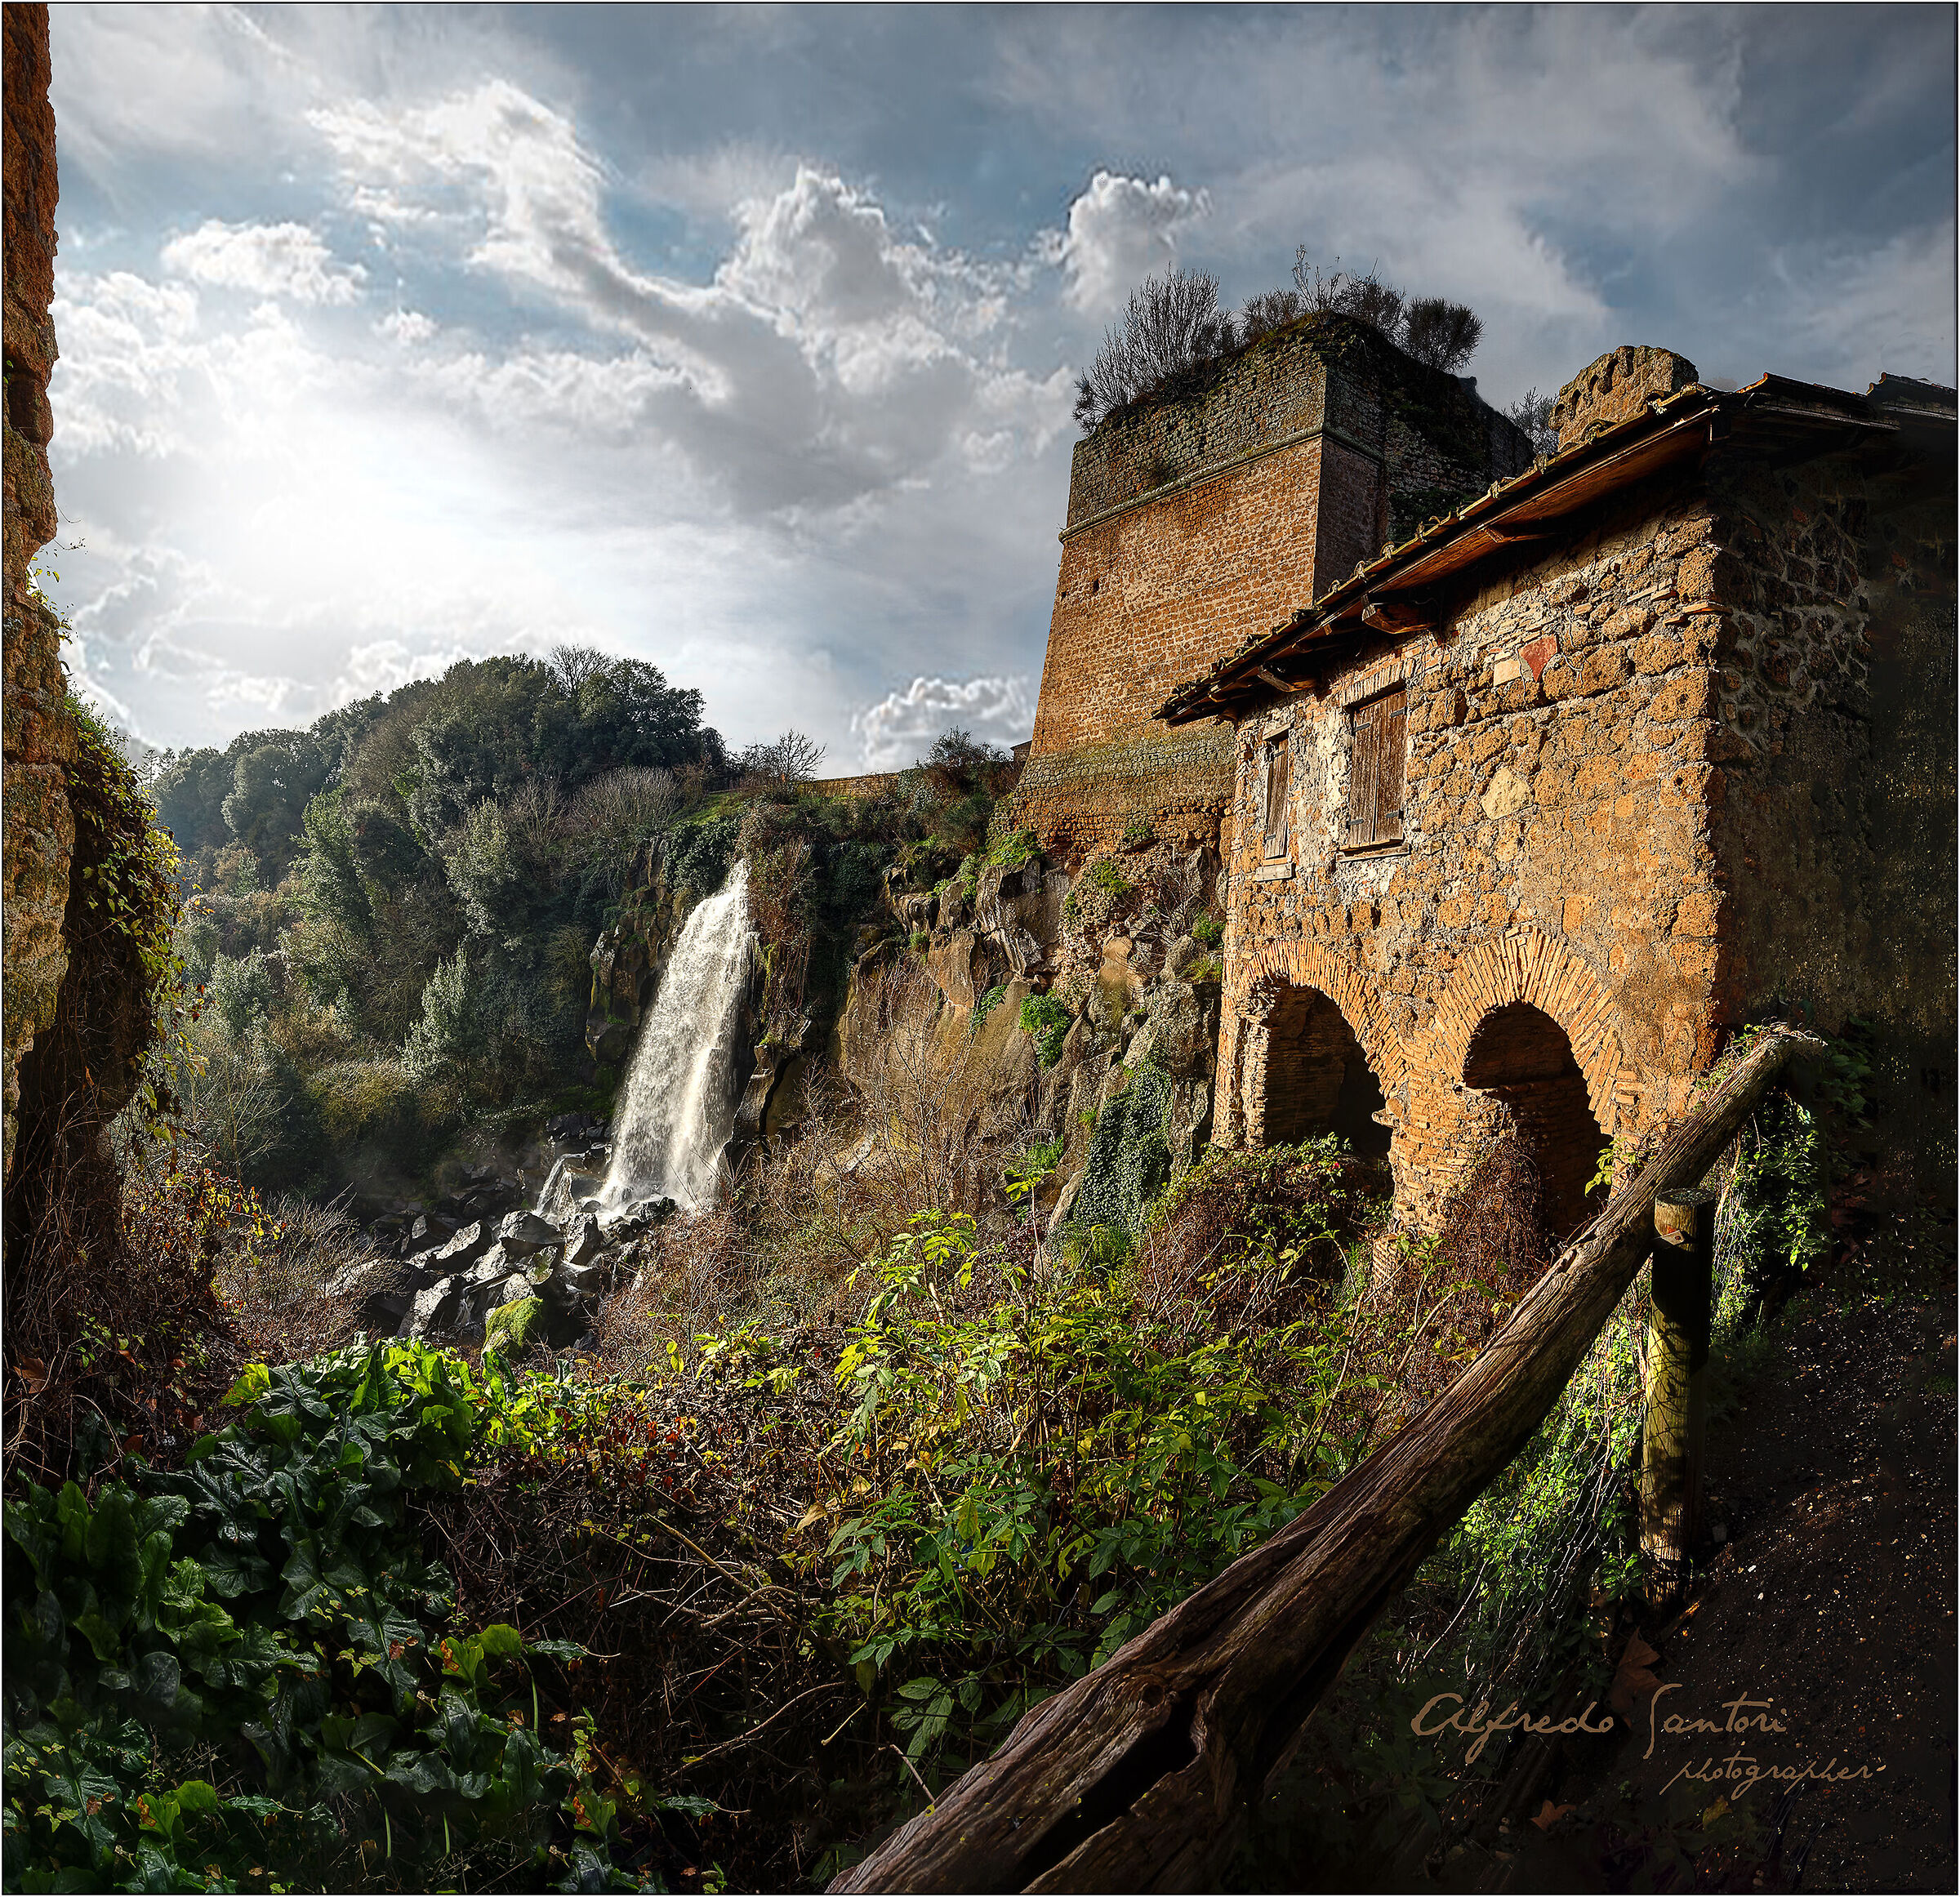 The Cavaterra waterfall...